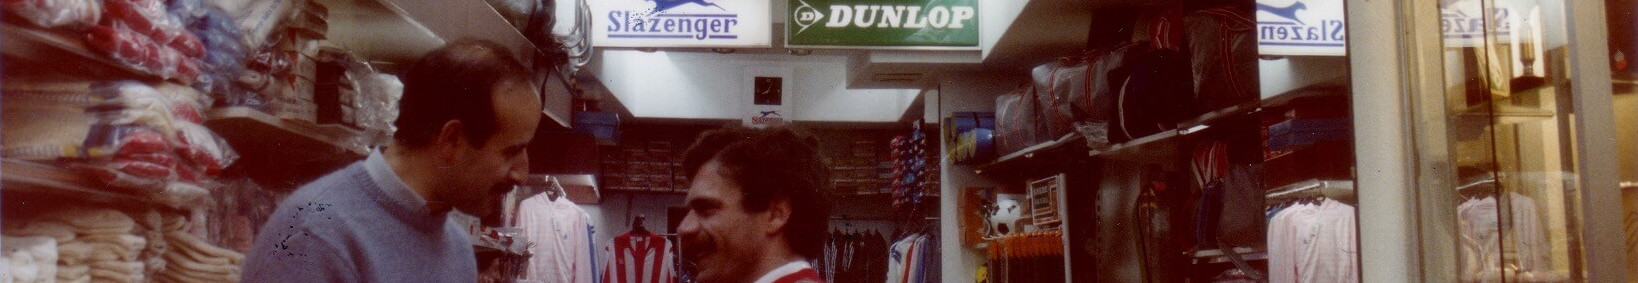 Primera tienda abierta en 1985